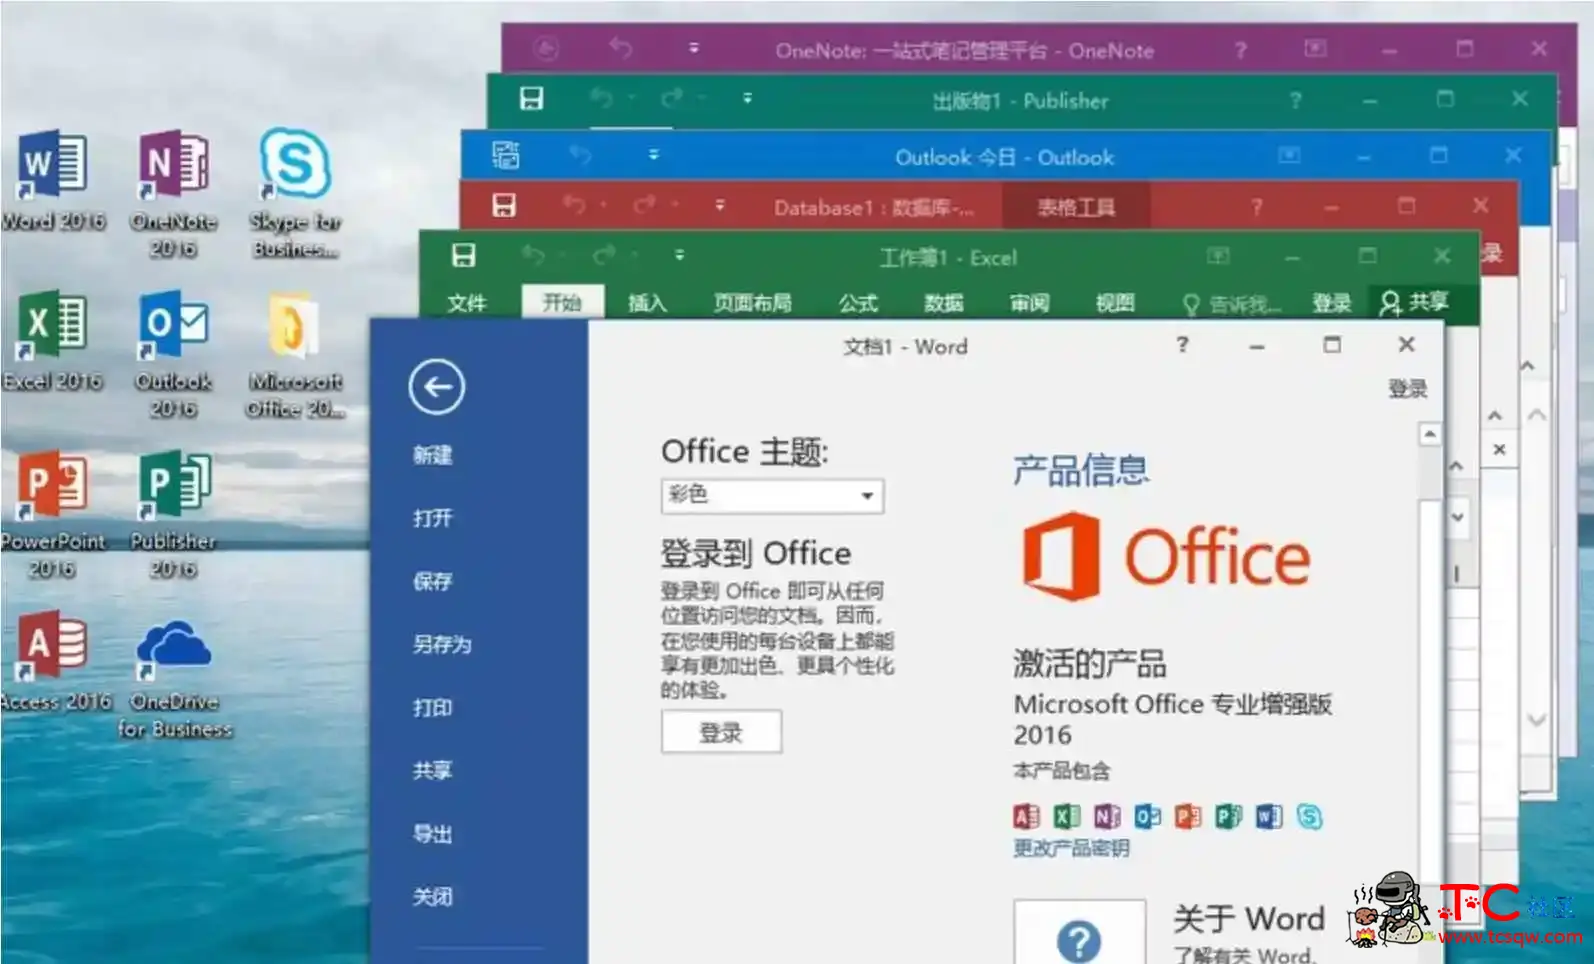 微软Office 2016 批量授权版商业版批量授权工具 屠城辅助网www.tcfz1.com3509